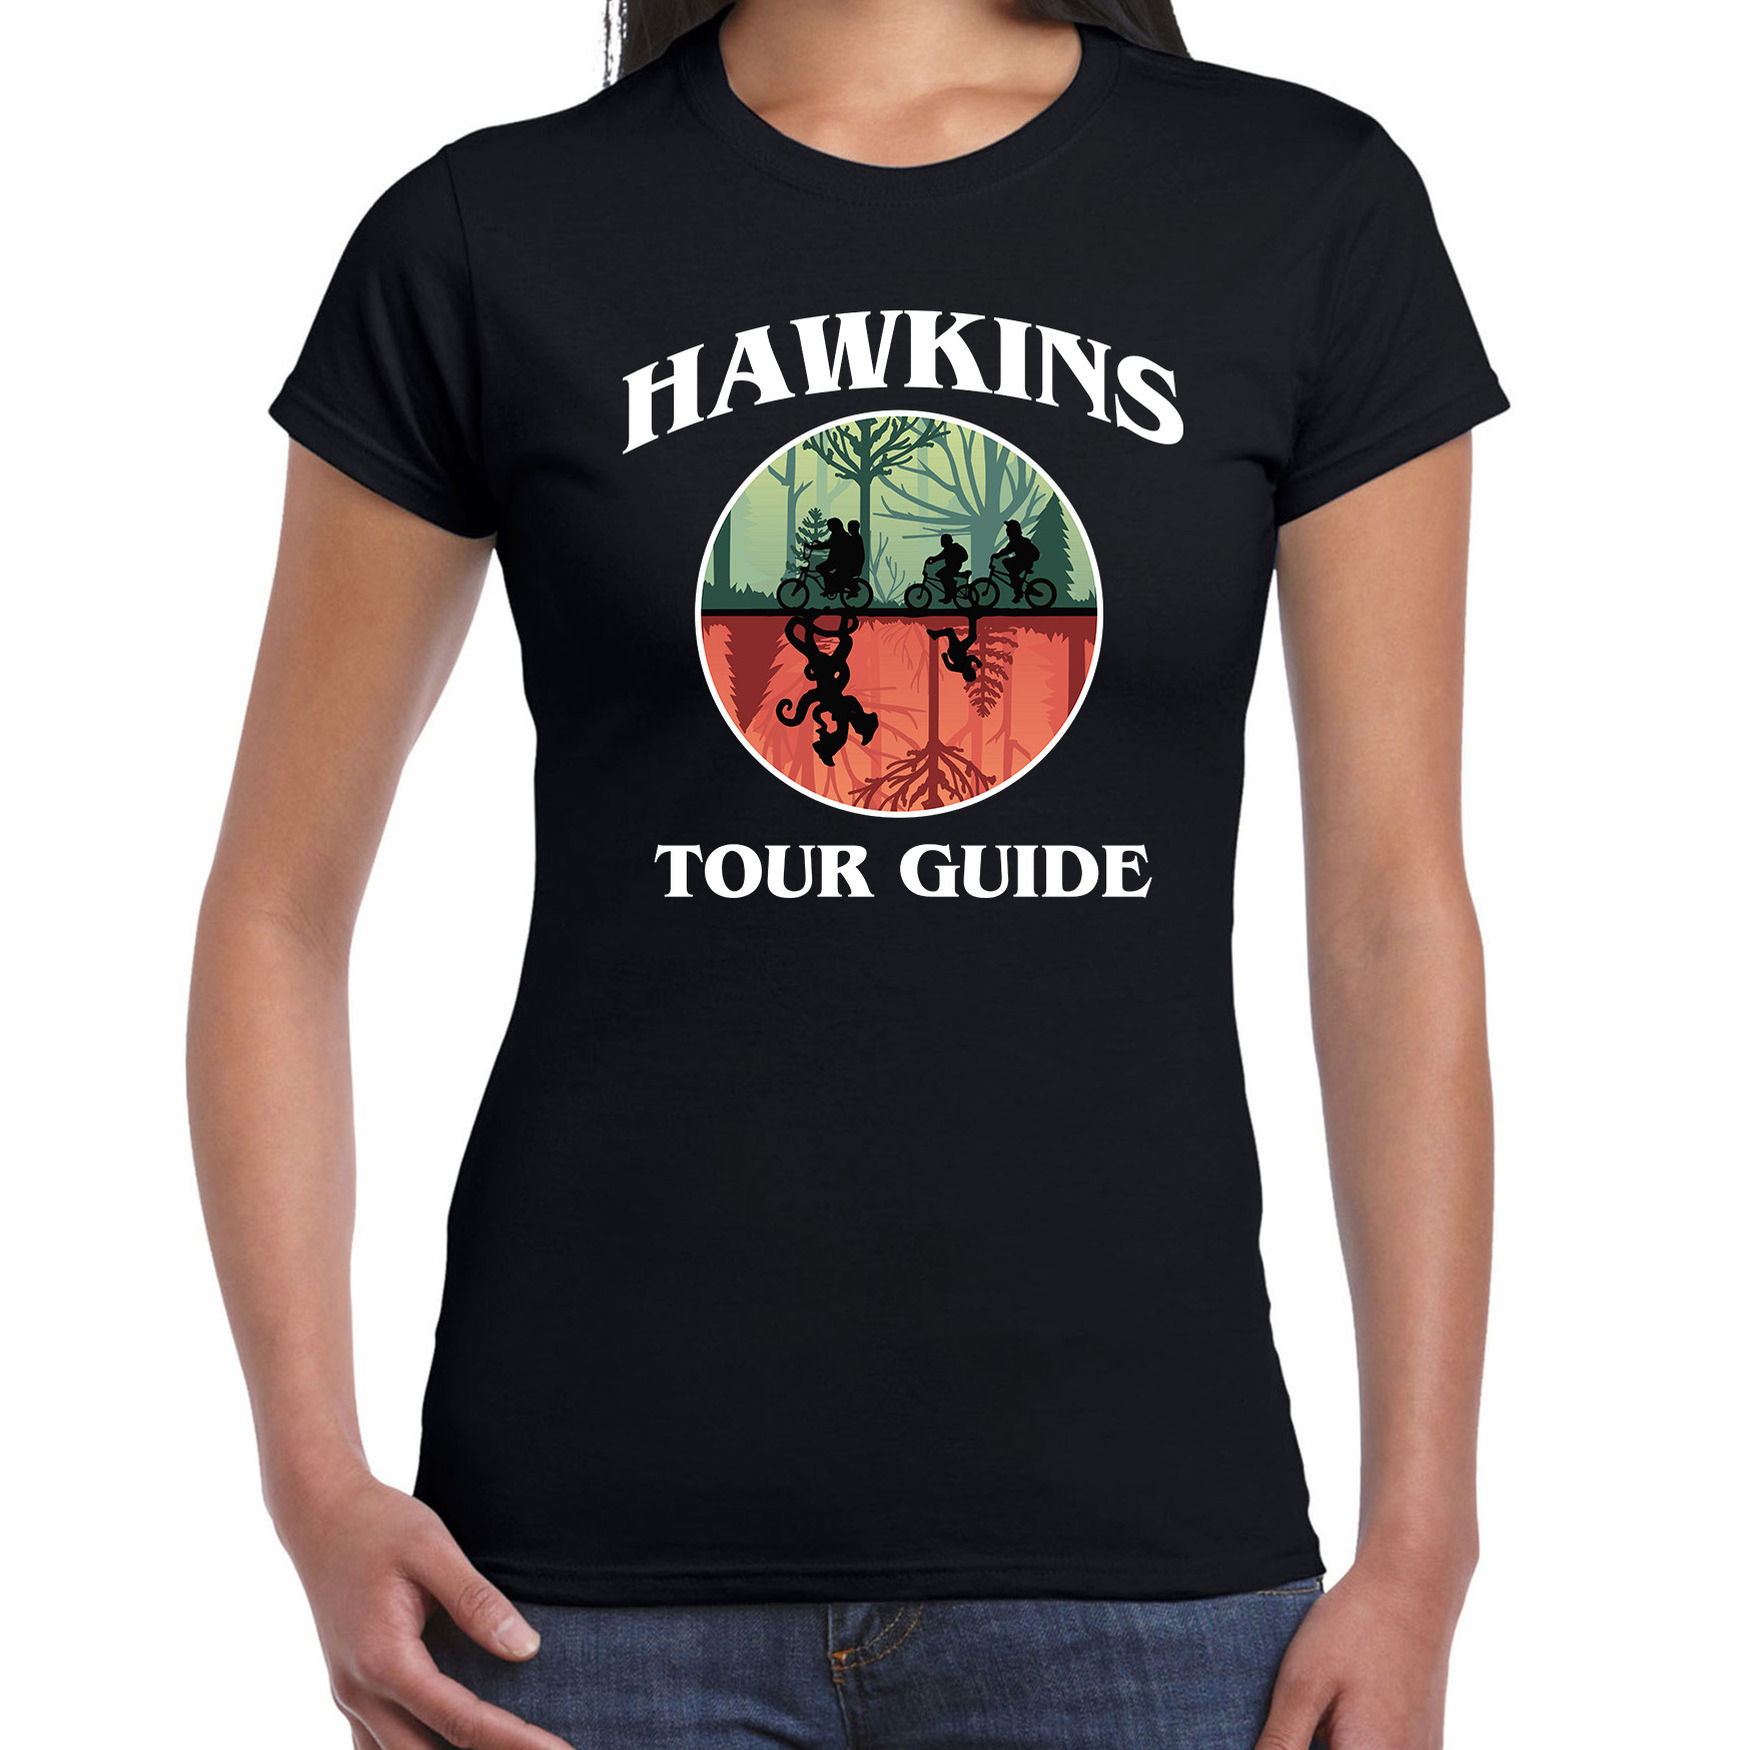 Halloween - Stranger Halloween verkleed shirt hawkins tour guide zwart voor dames